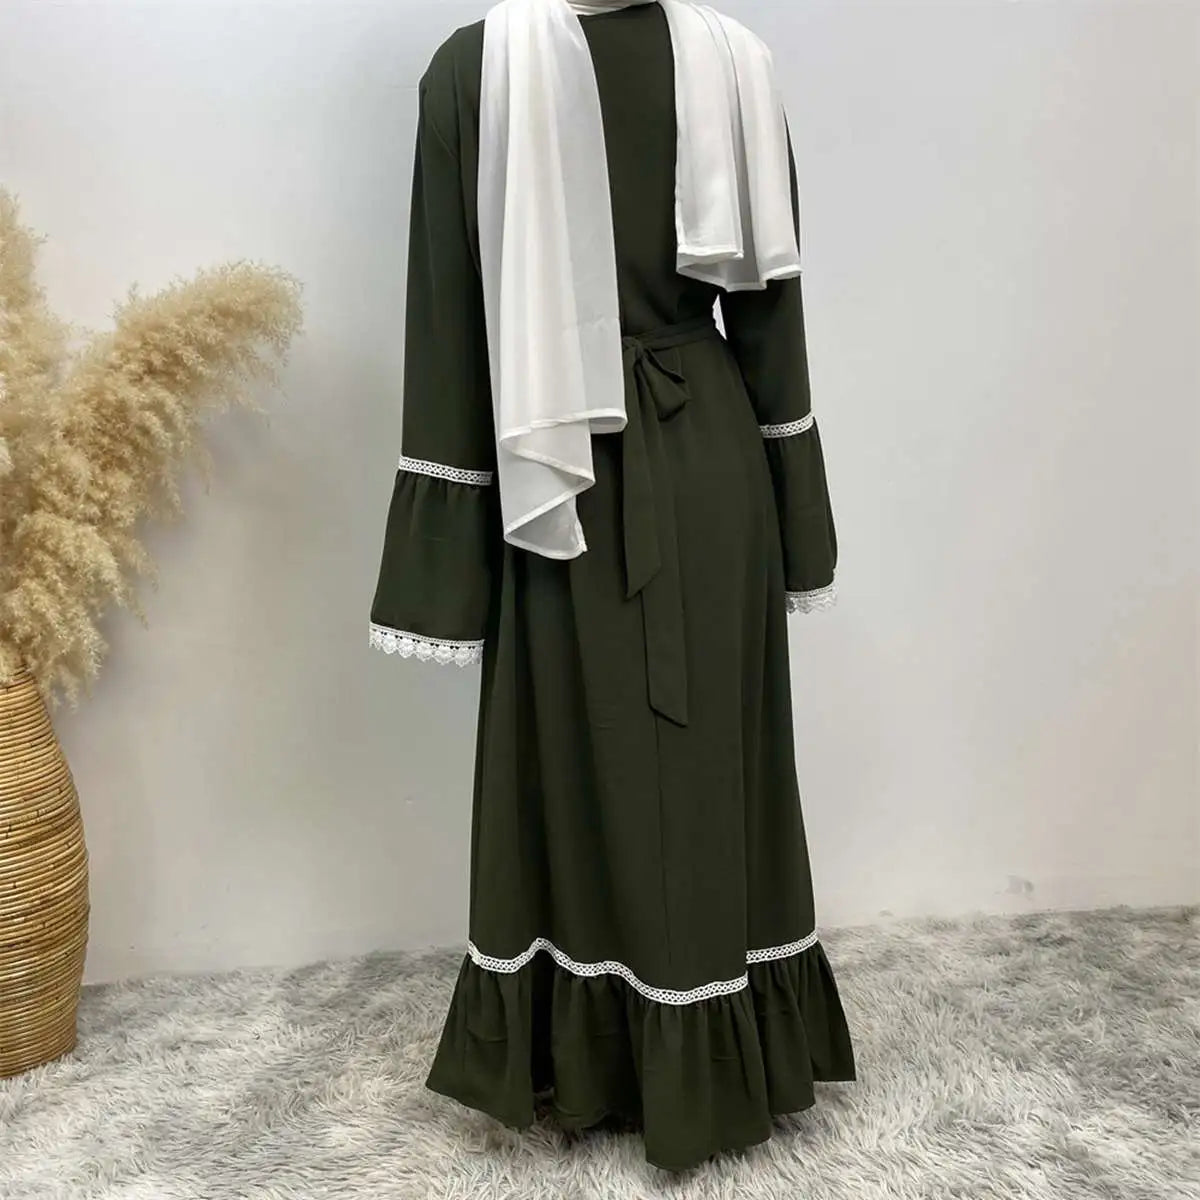 Muslim Women Chiffon Lace Abaya Dress